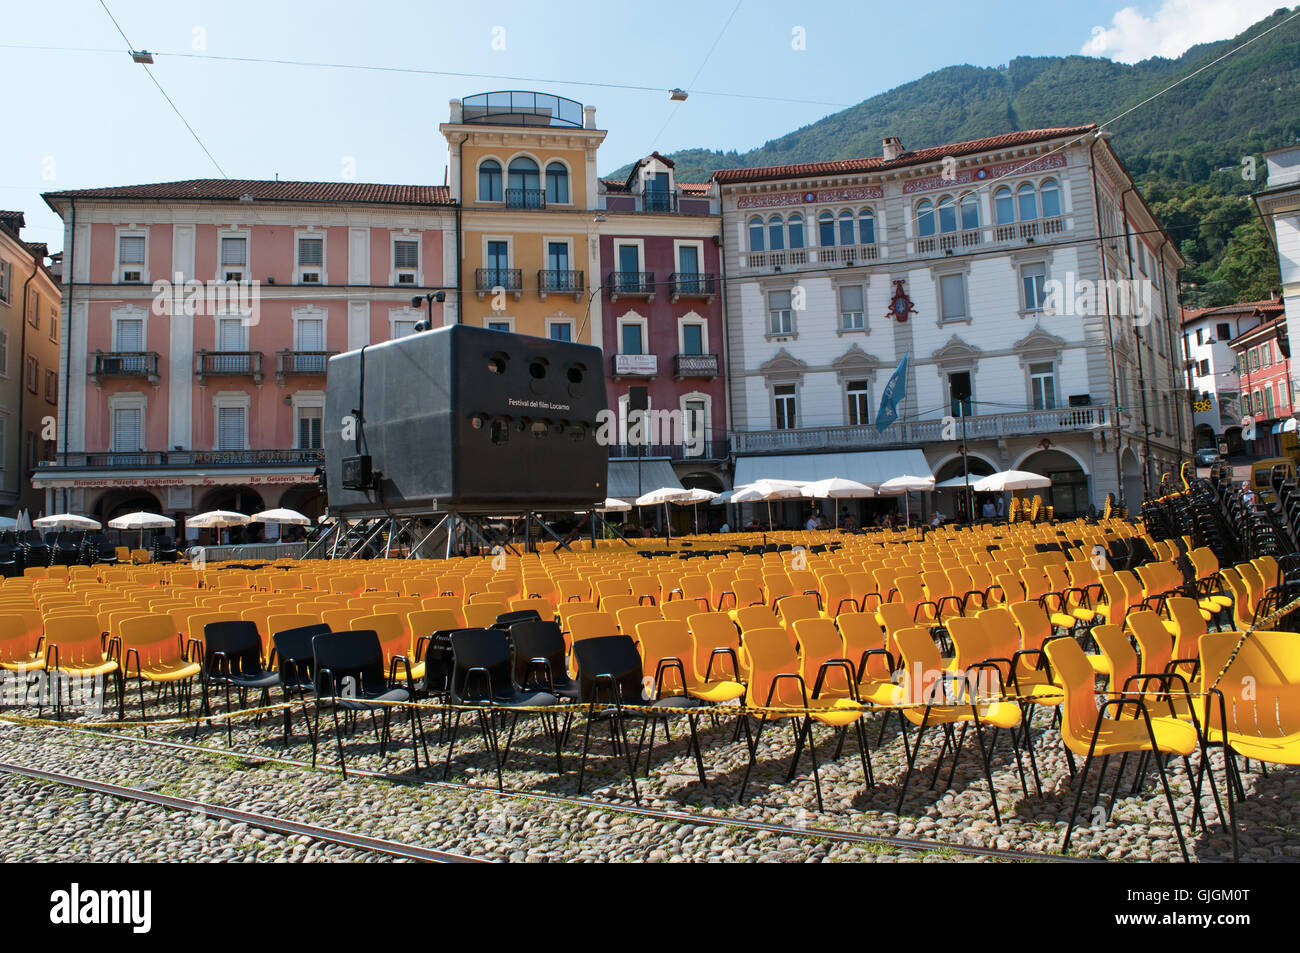 Schweiz: die Stühle und Filmprojektor Film Festival Locarno, ein internationales Filmfestival statt jedes Jahr im August Stockfoto